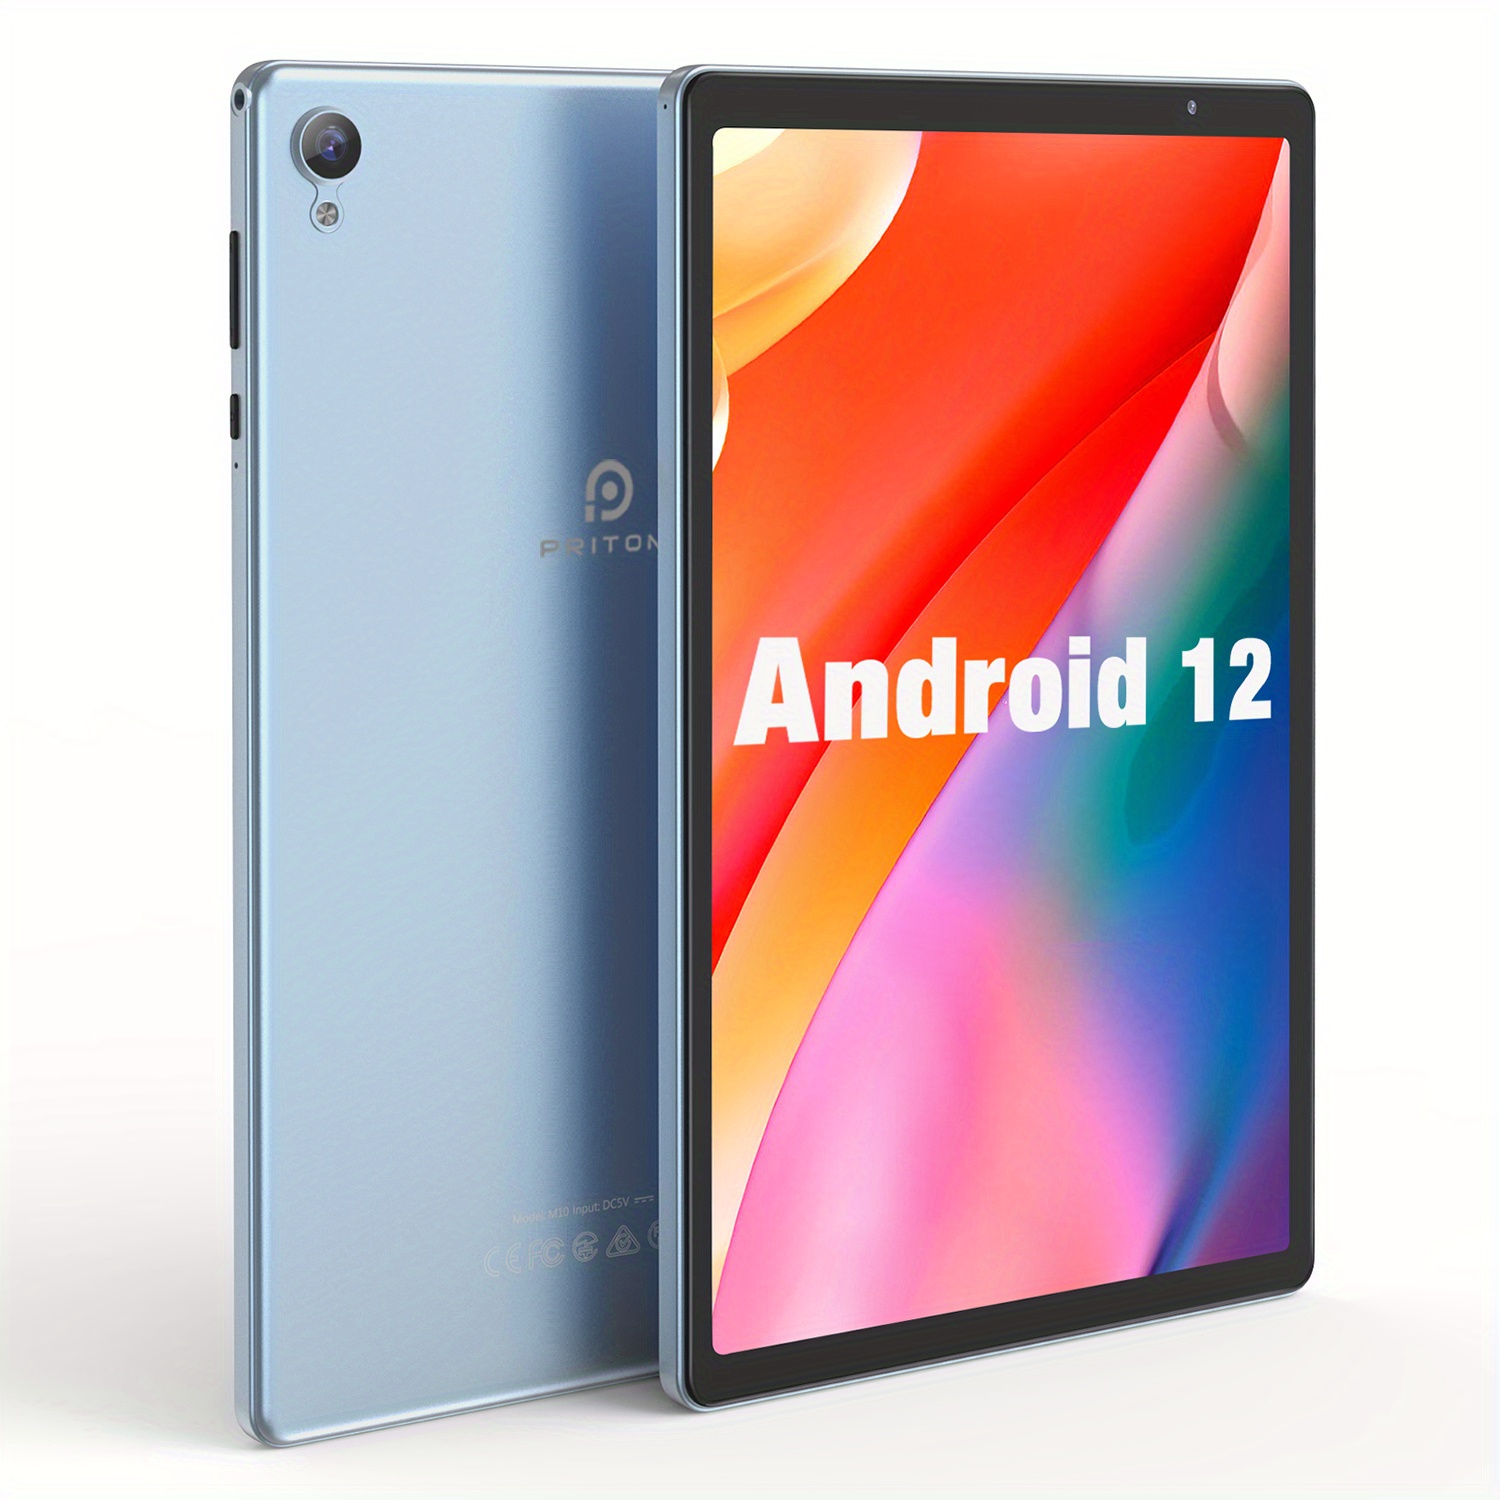 Tablette Android 10 pouces, Pritom M10, 2 Go de RAM, 32 Go